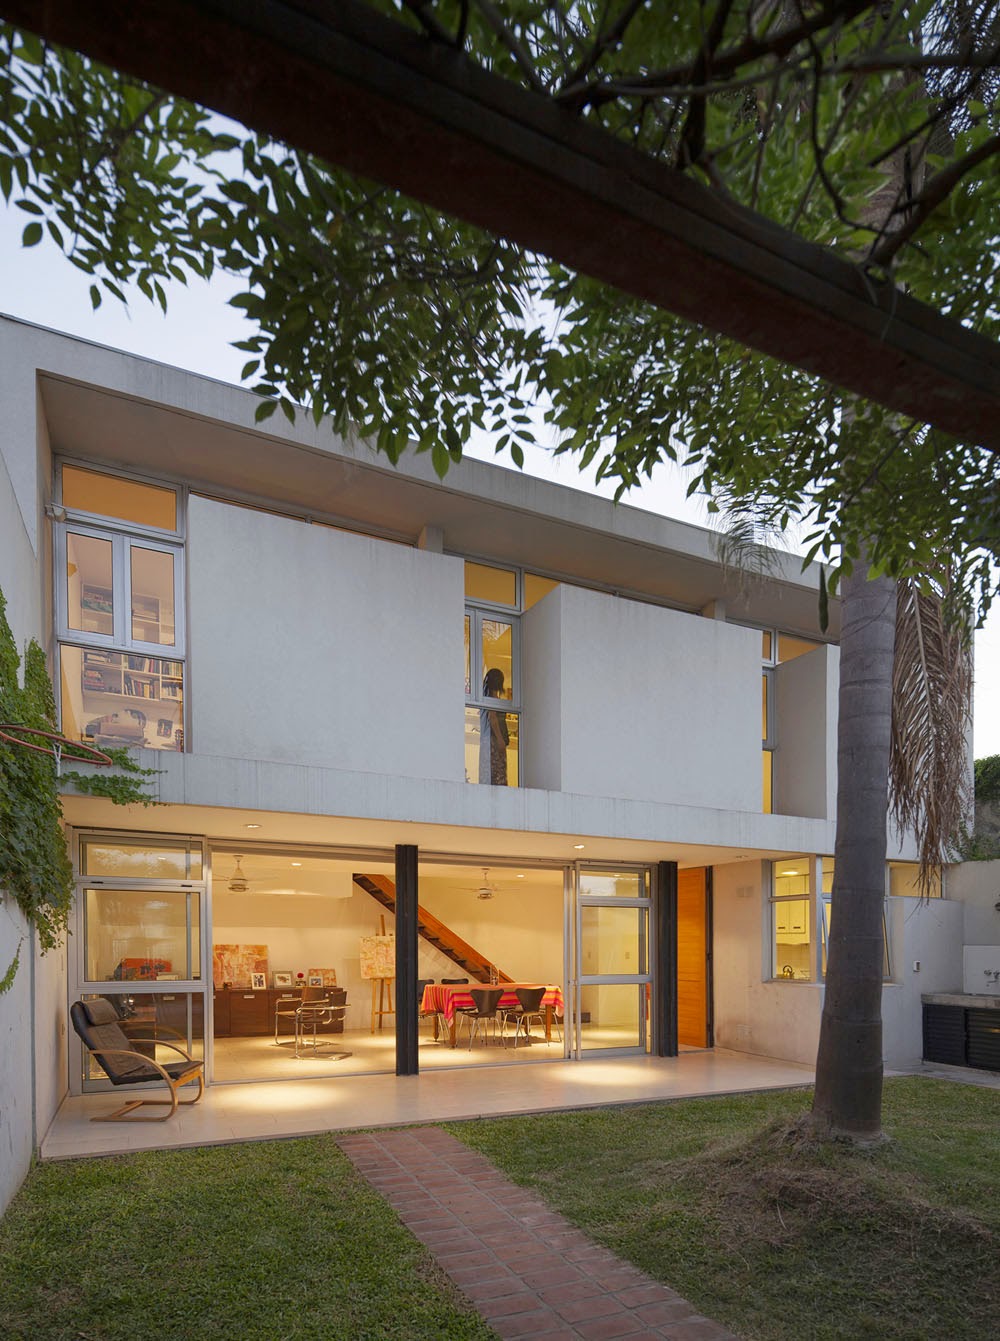 Desain Rumah 2 Lantai Minimalis Dengan Tata Letak Terbuka Yang